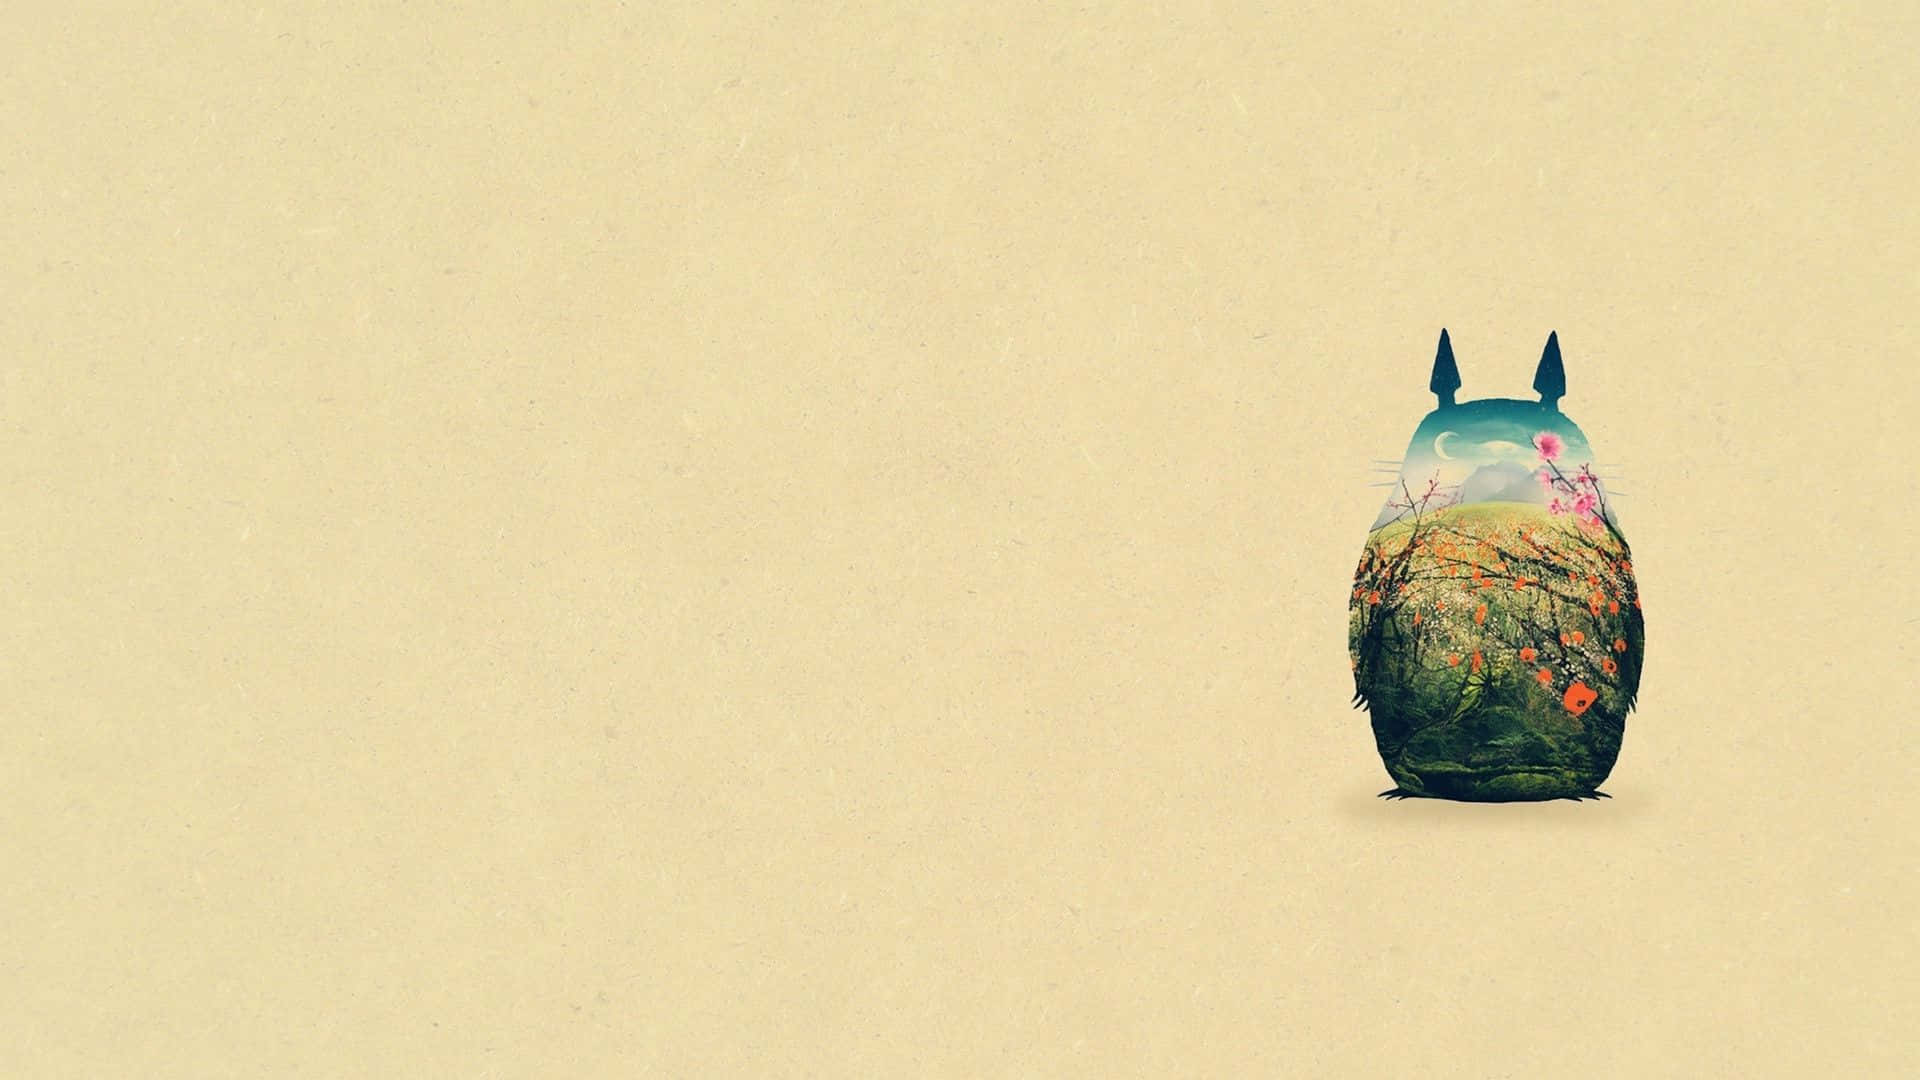 Dergeliebte Filmcharakter Totoro In Seinem Ikonischen Blauen Anzug Und Hut